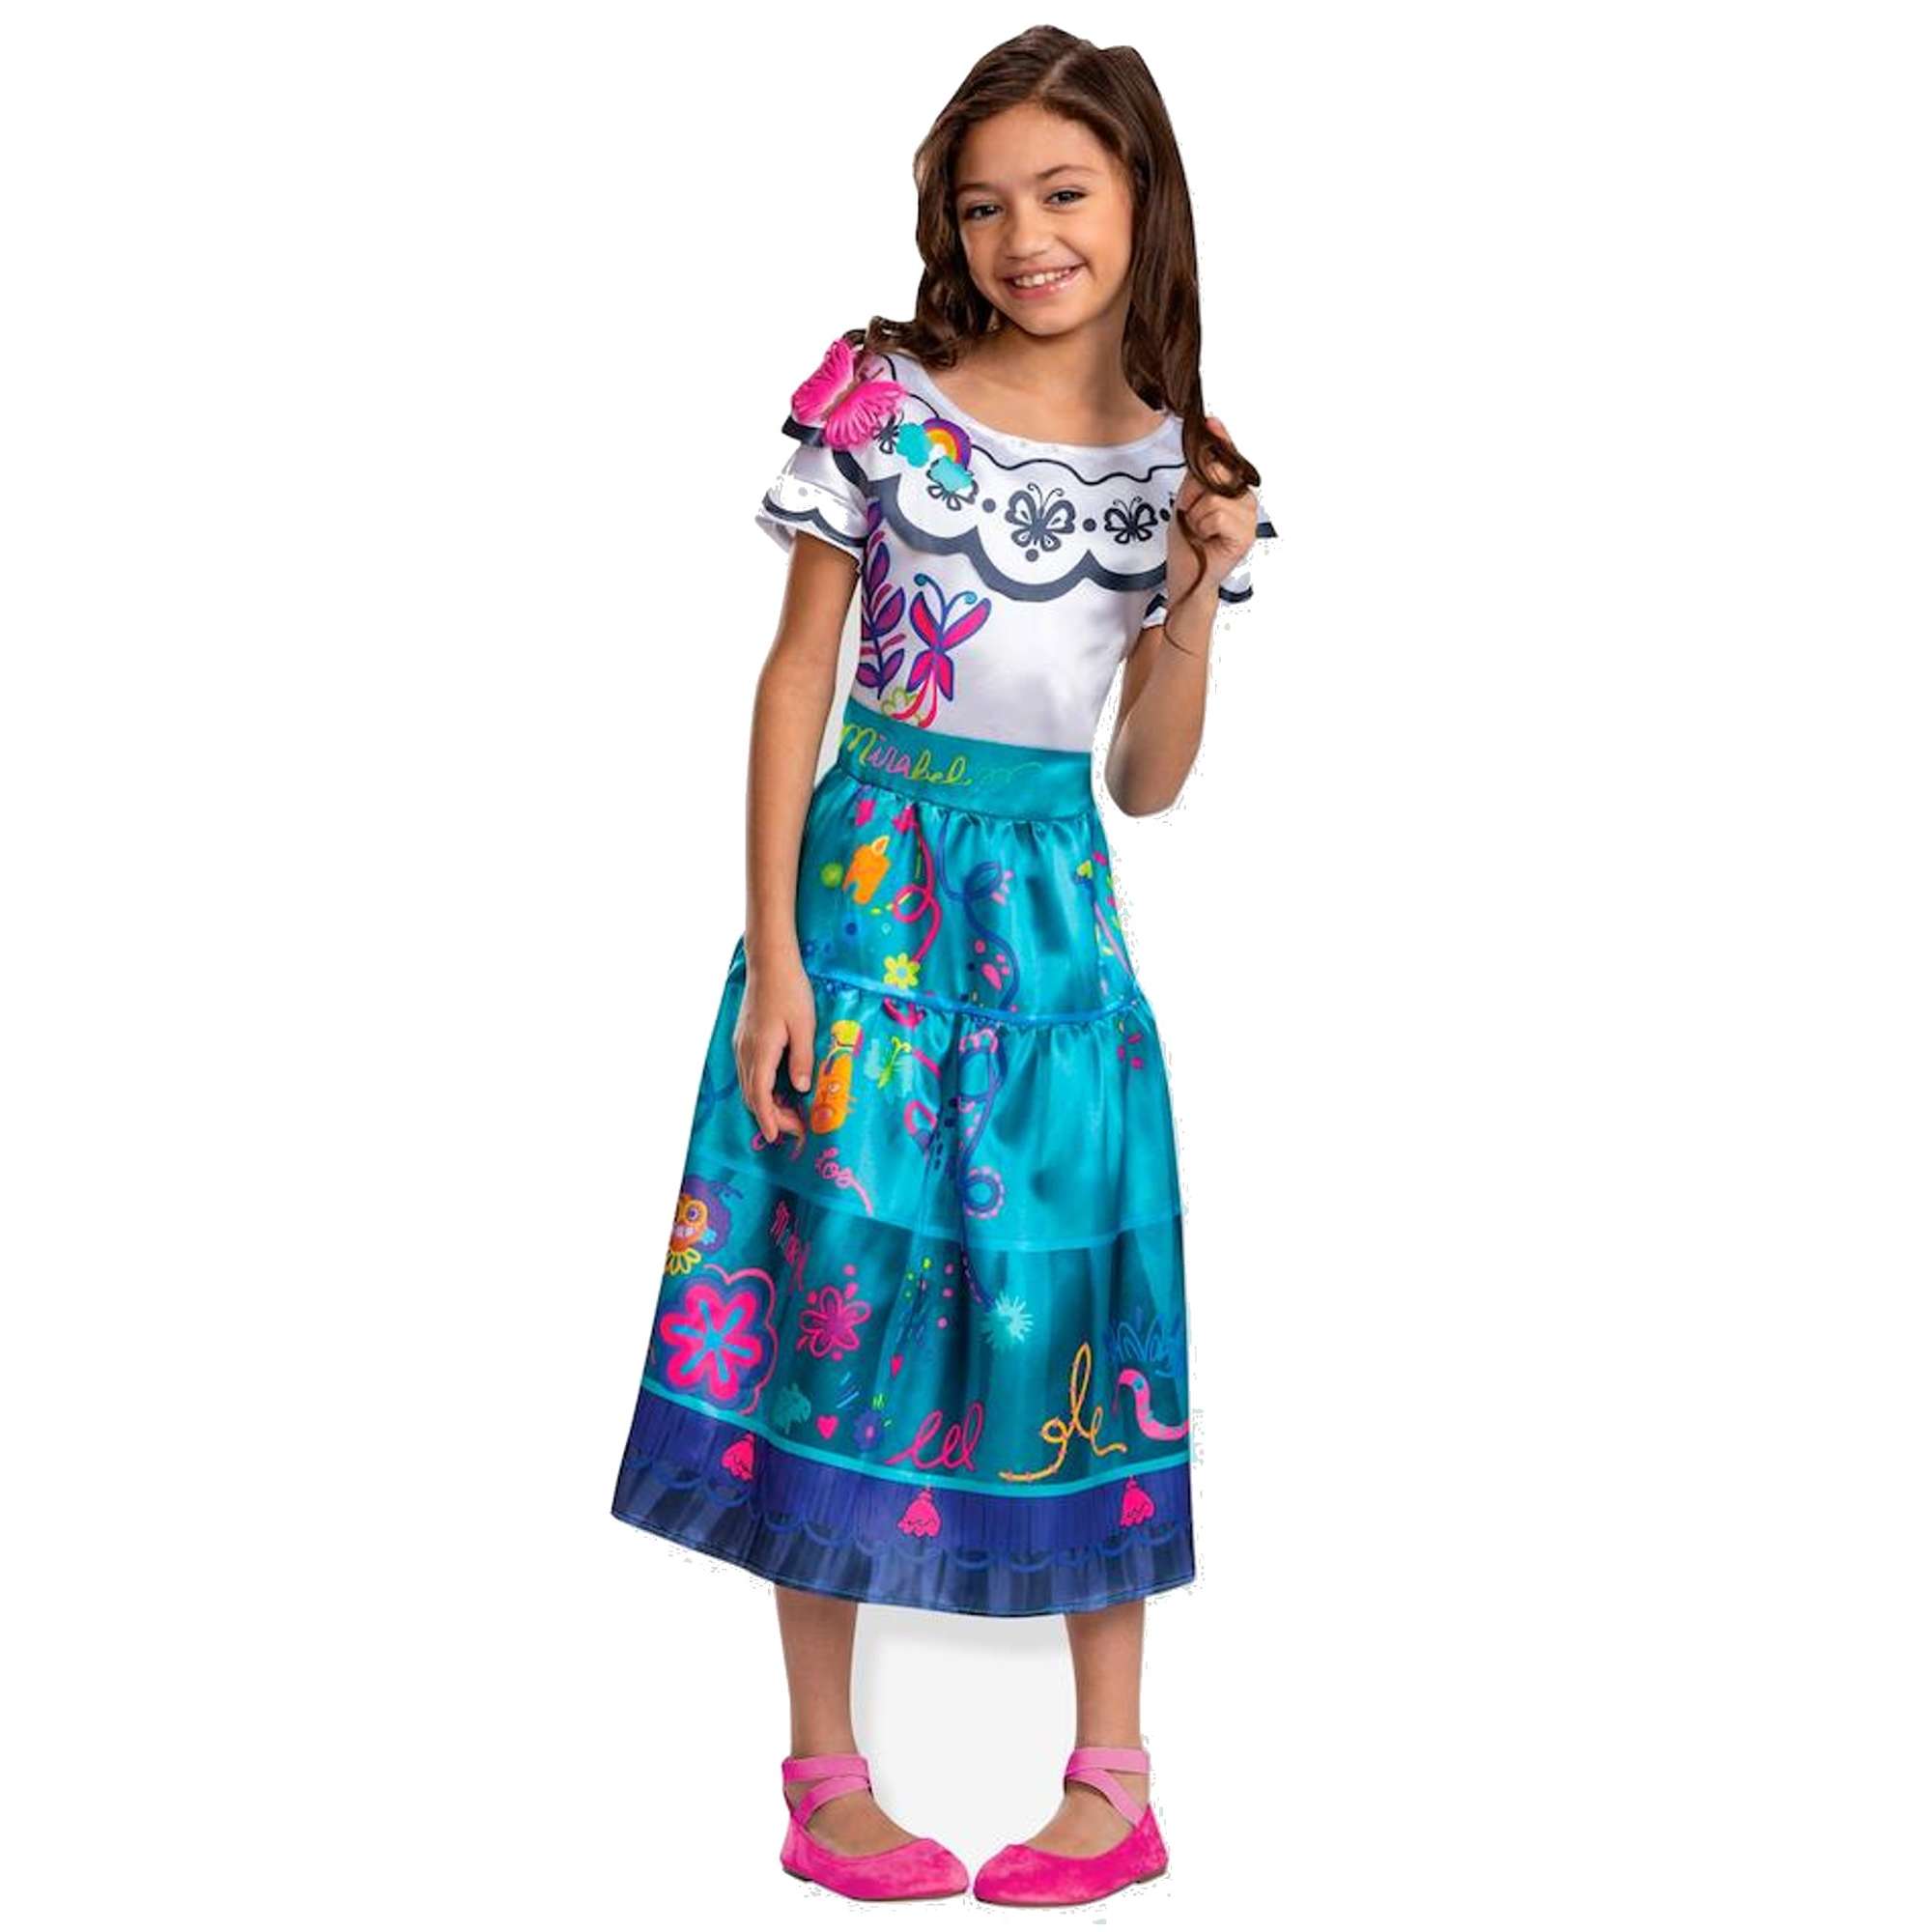 Strj karnawaowy Disney dla dziewczynki Encanto Mirabel kostium przebranie 110-122 cm (4-6 lat)